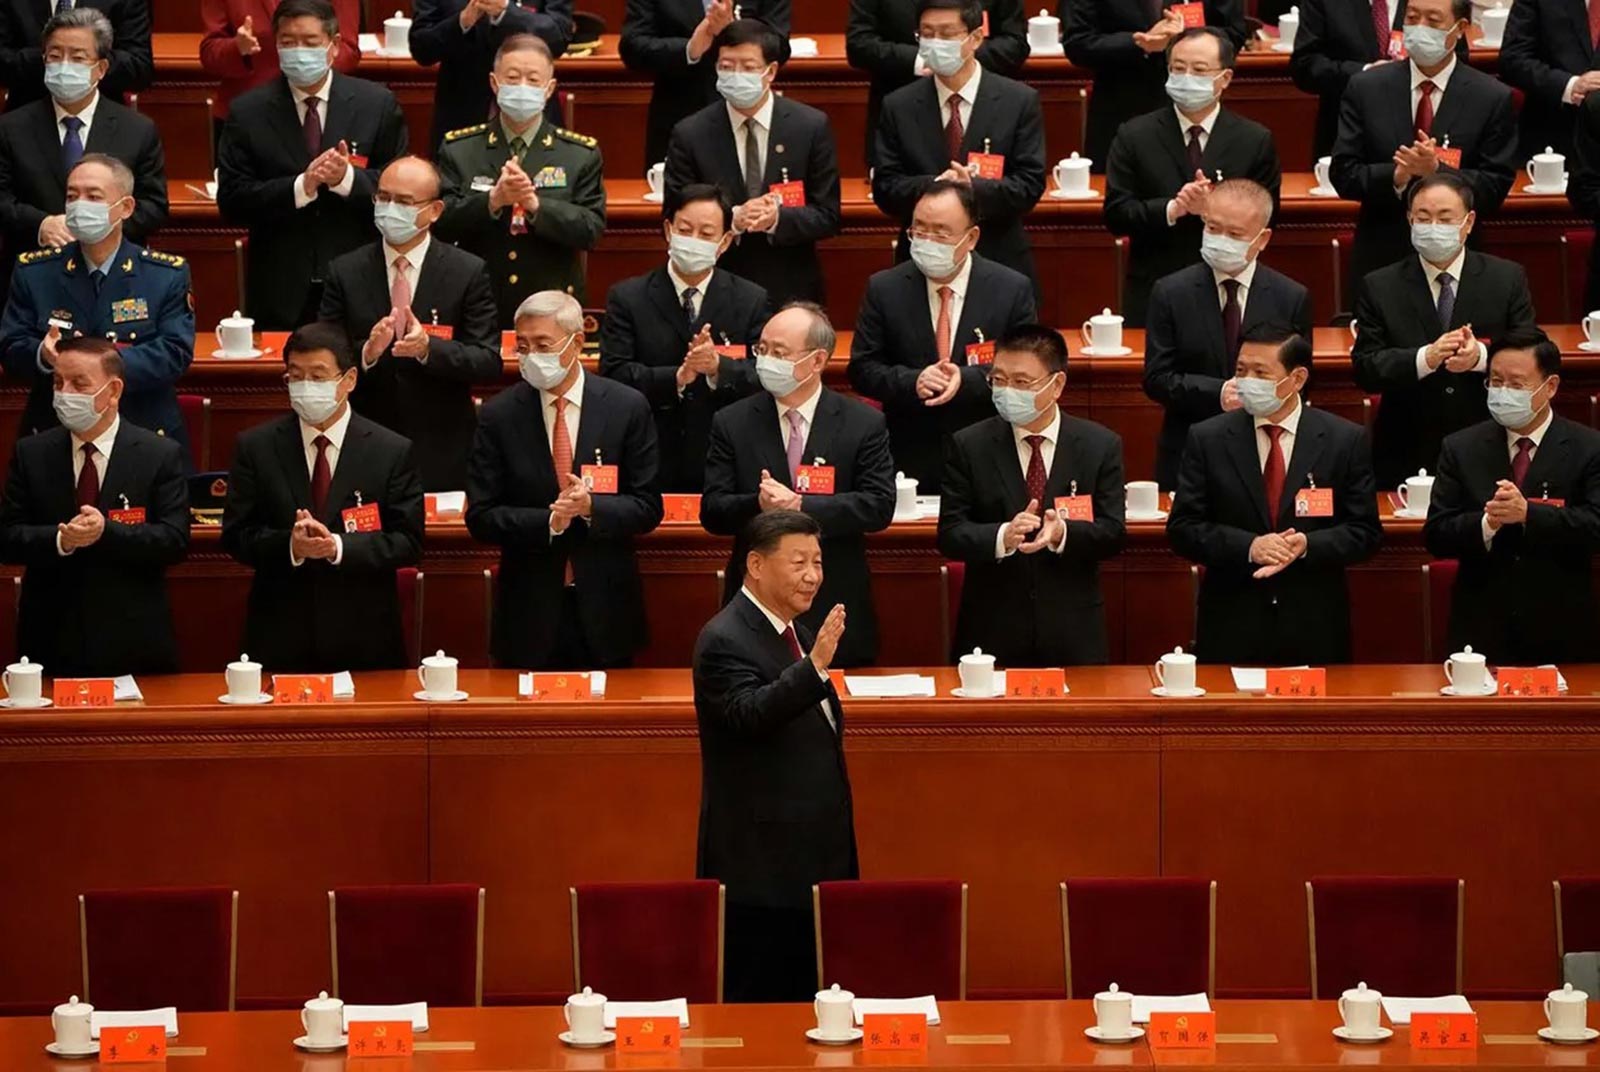 Xi Jinping’s 5 priorities in party congress report